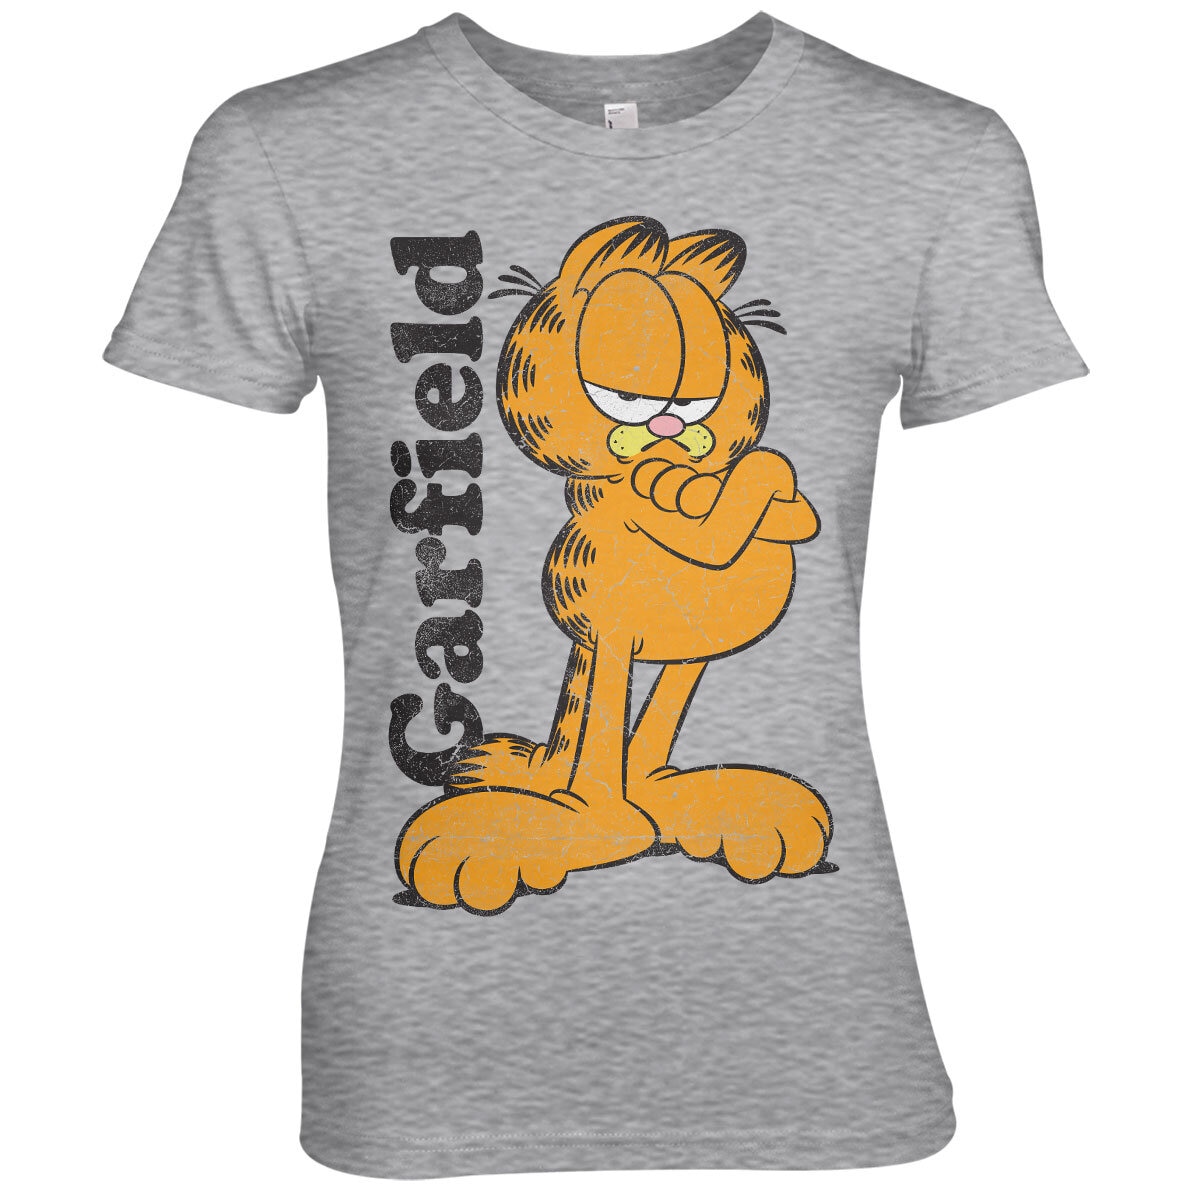 Garfield Girly Tee